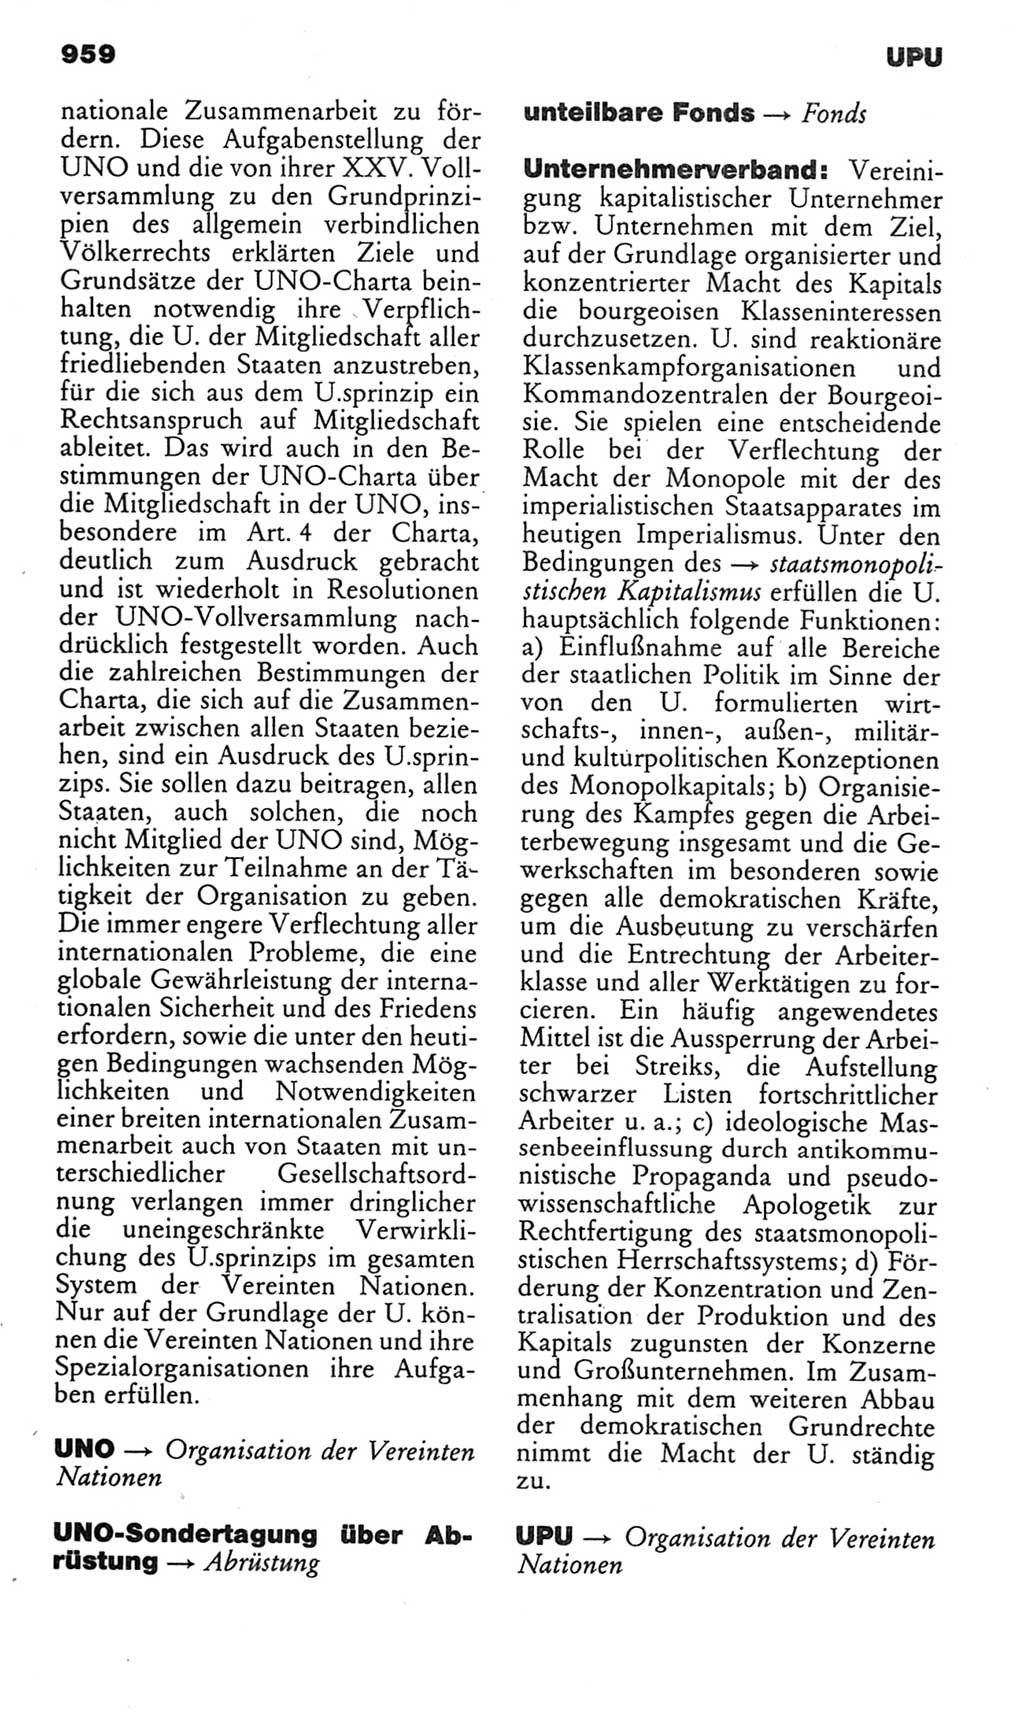 Kleines politisches Wörterbuch [Deutsche Demokratische Republik (DDR)] 1985, Seite 959 (Kl. pol. Wb. DDR 1985, S. 959)